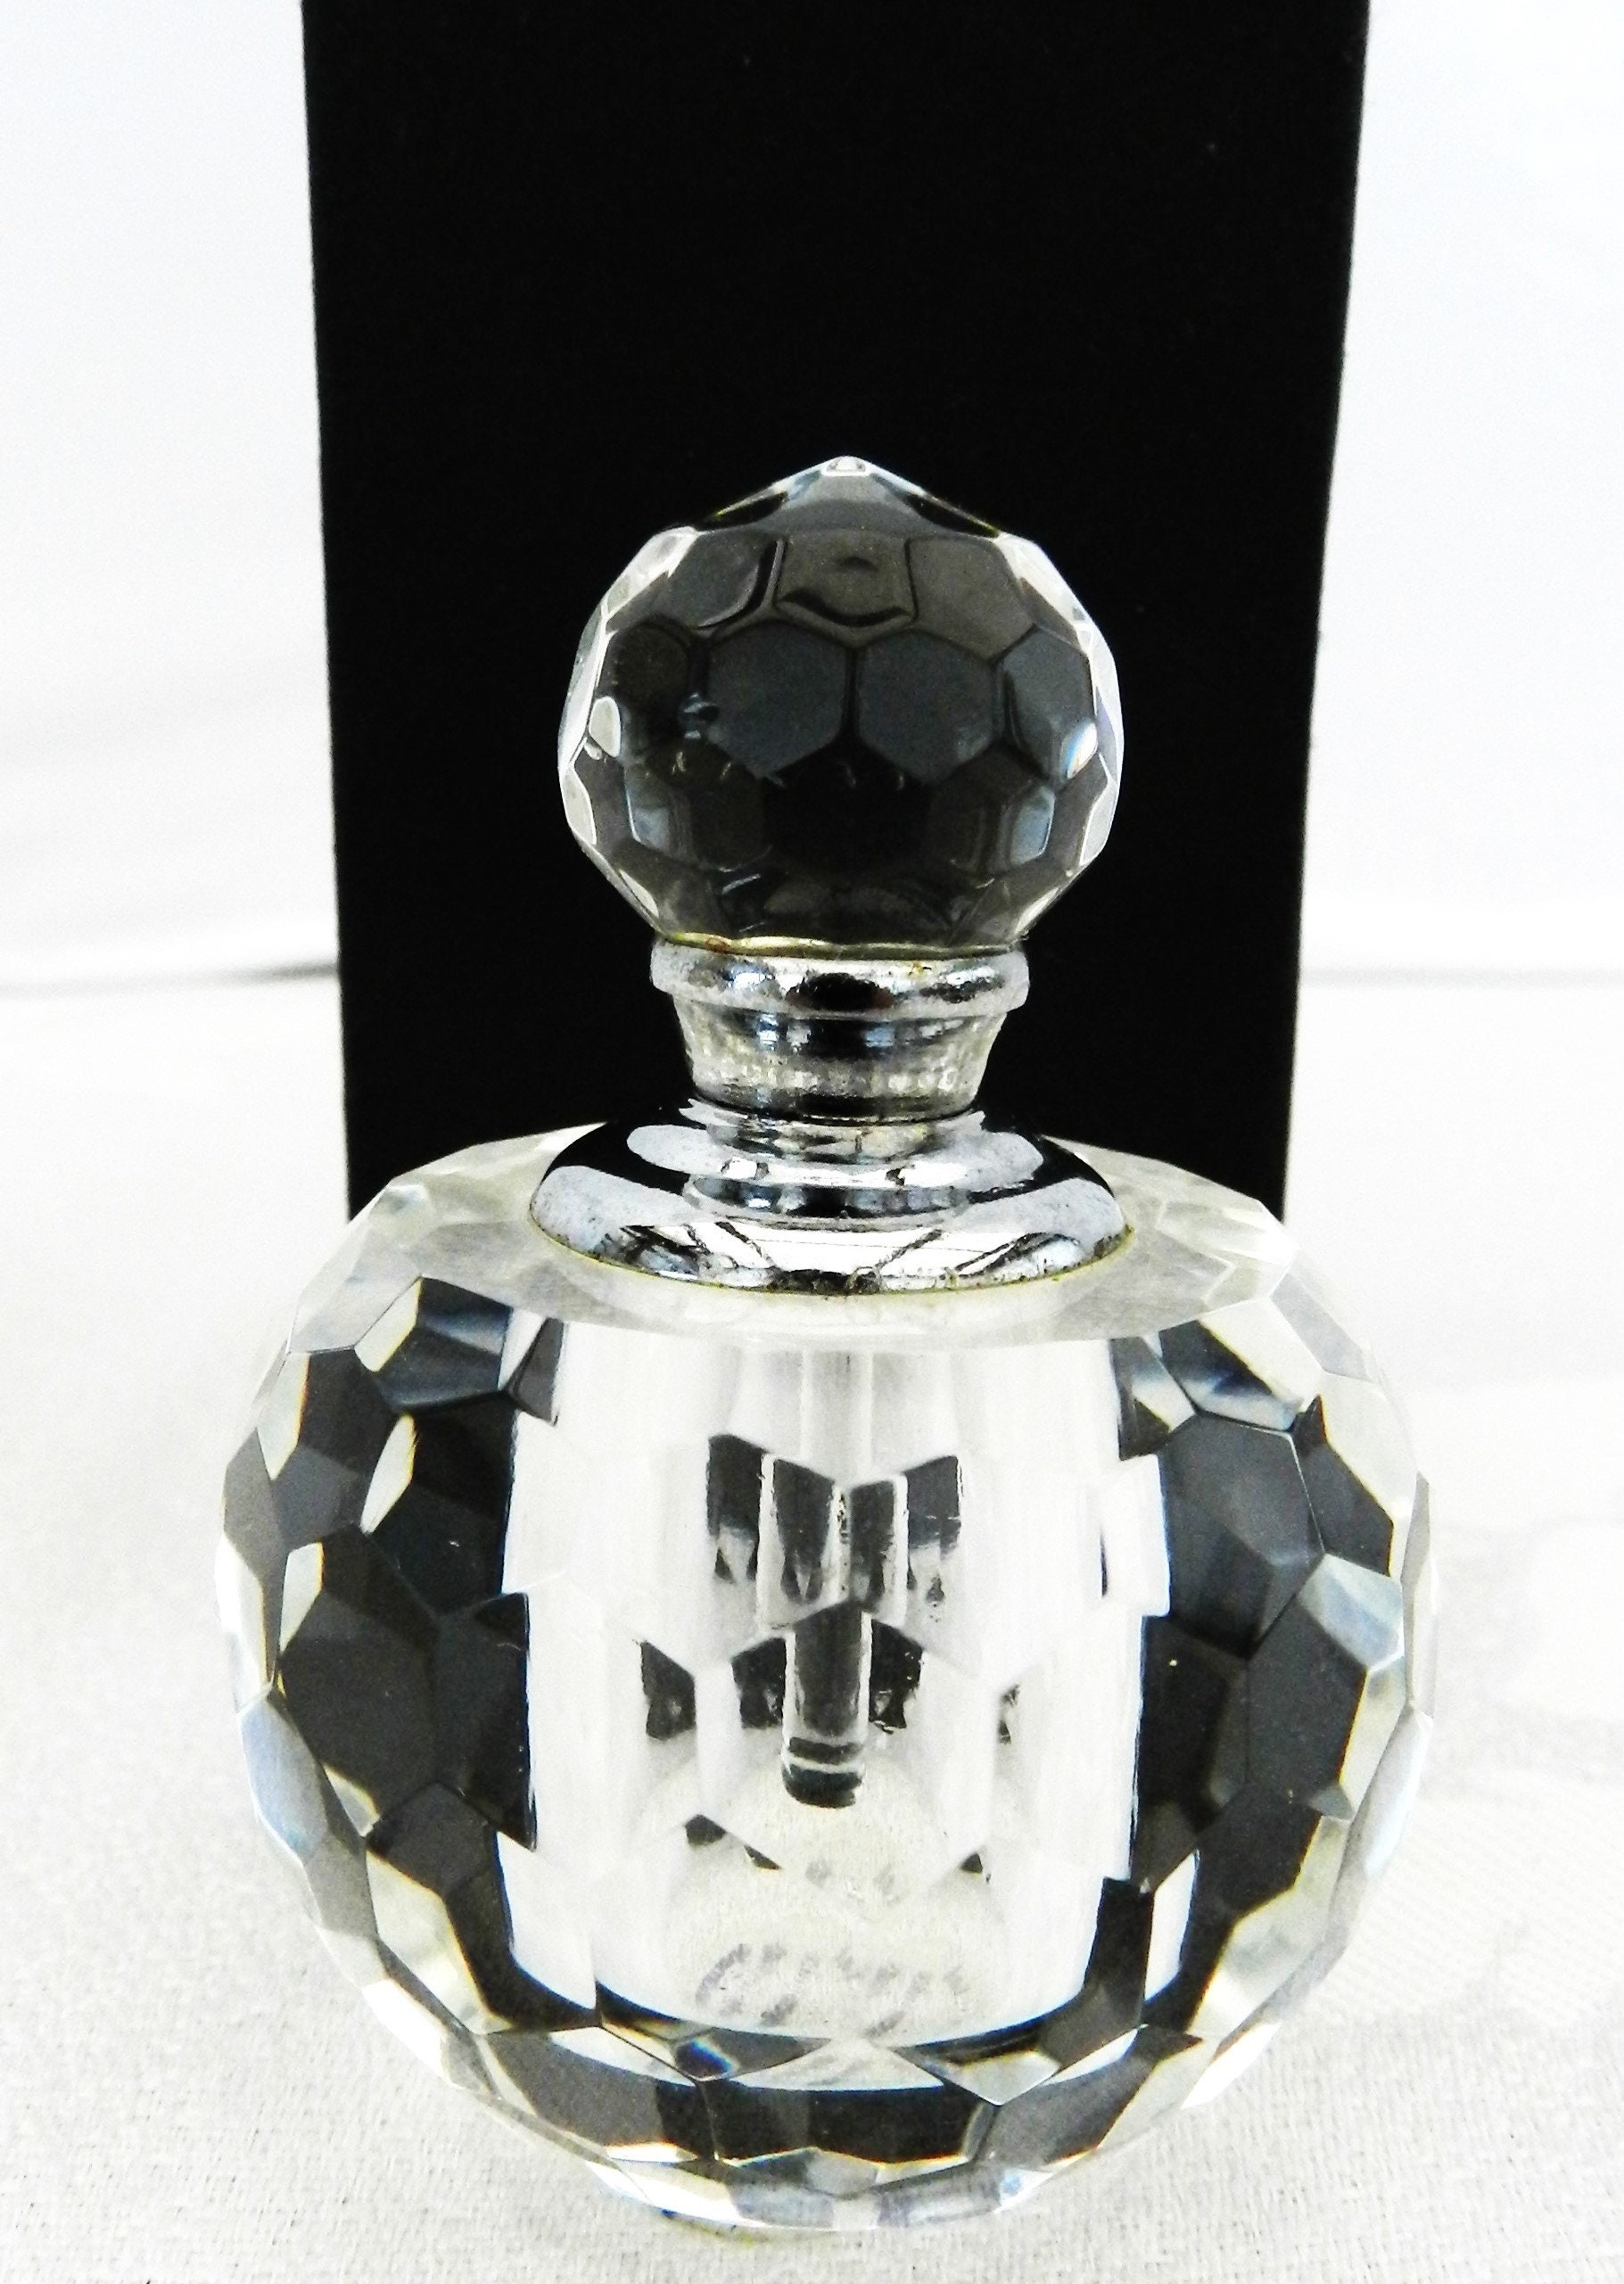 Mini parfüm flasche - .de